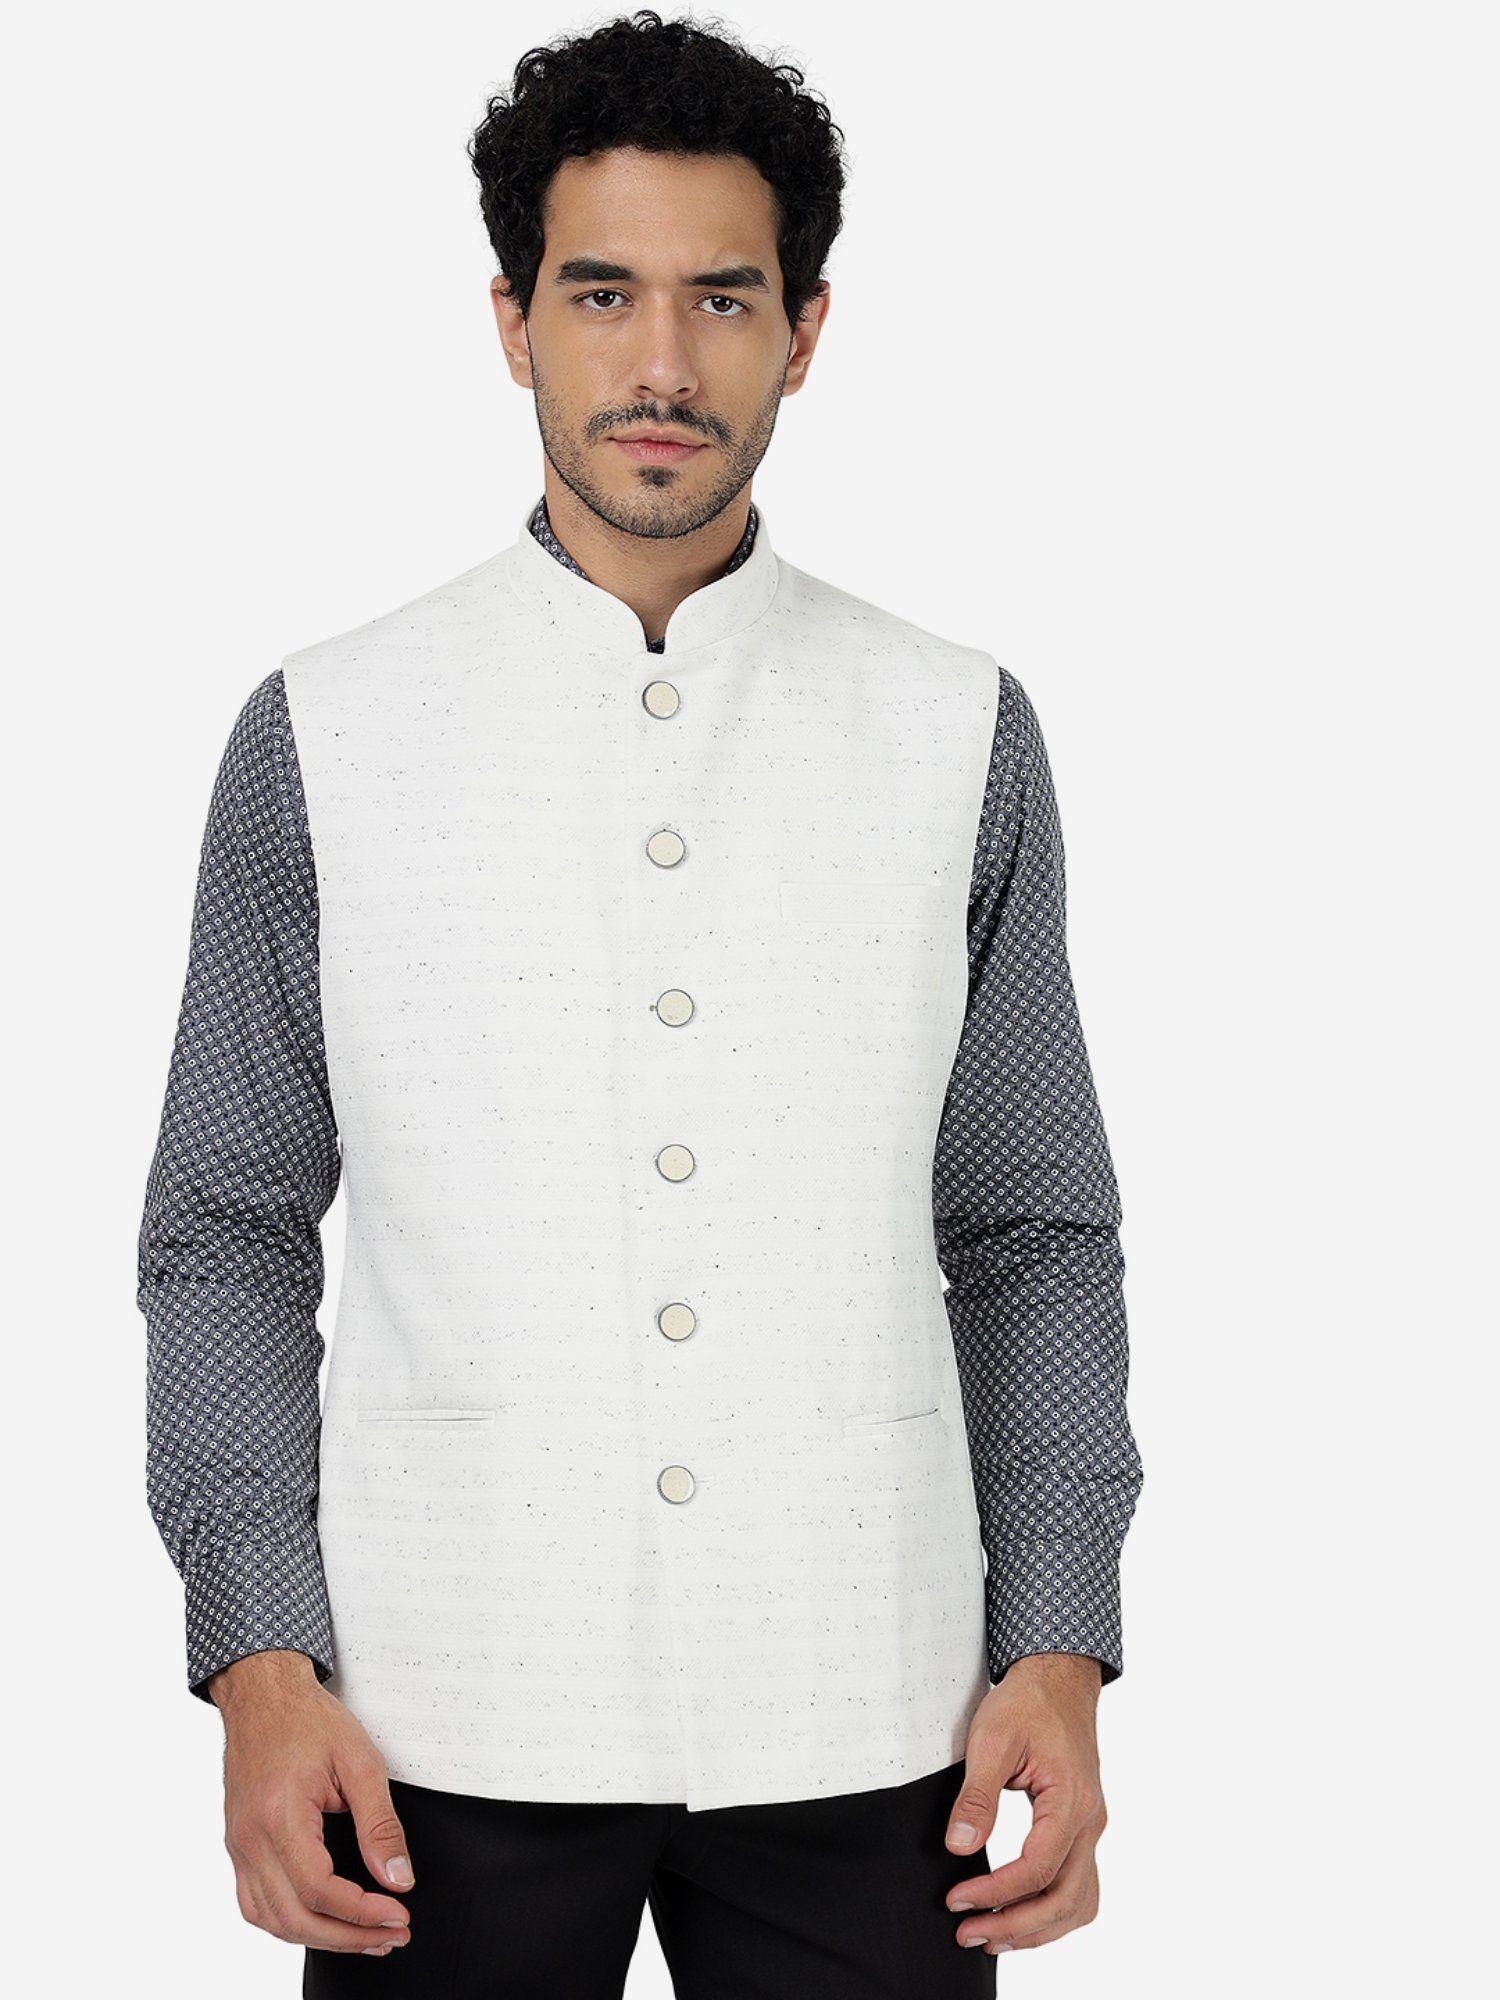 white-bandhgala-formal-jacket